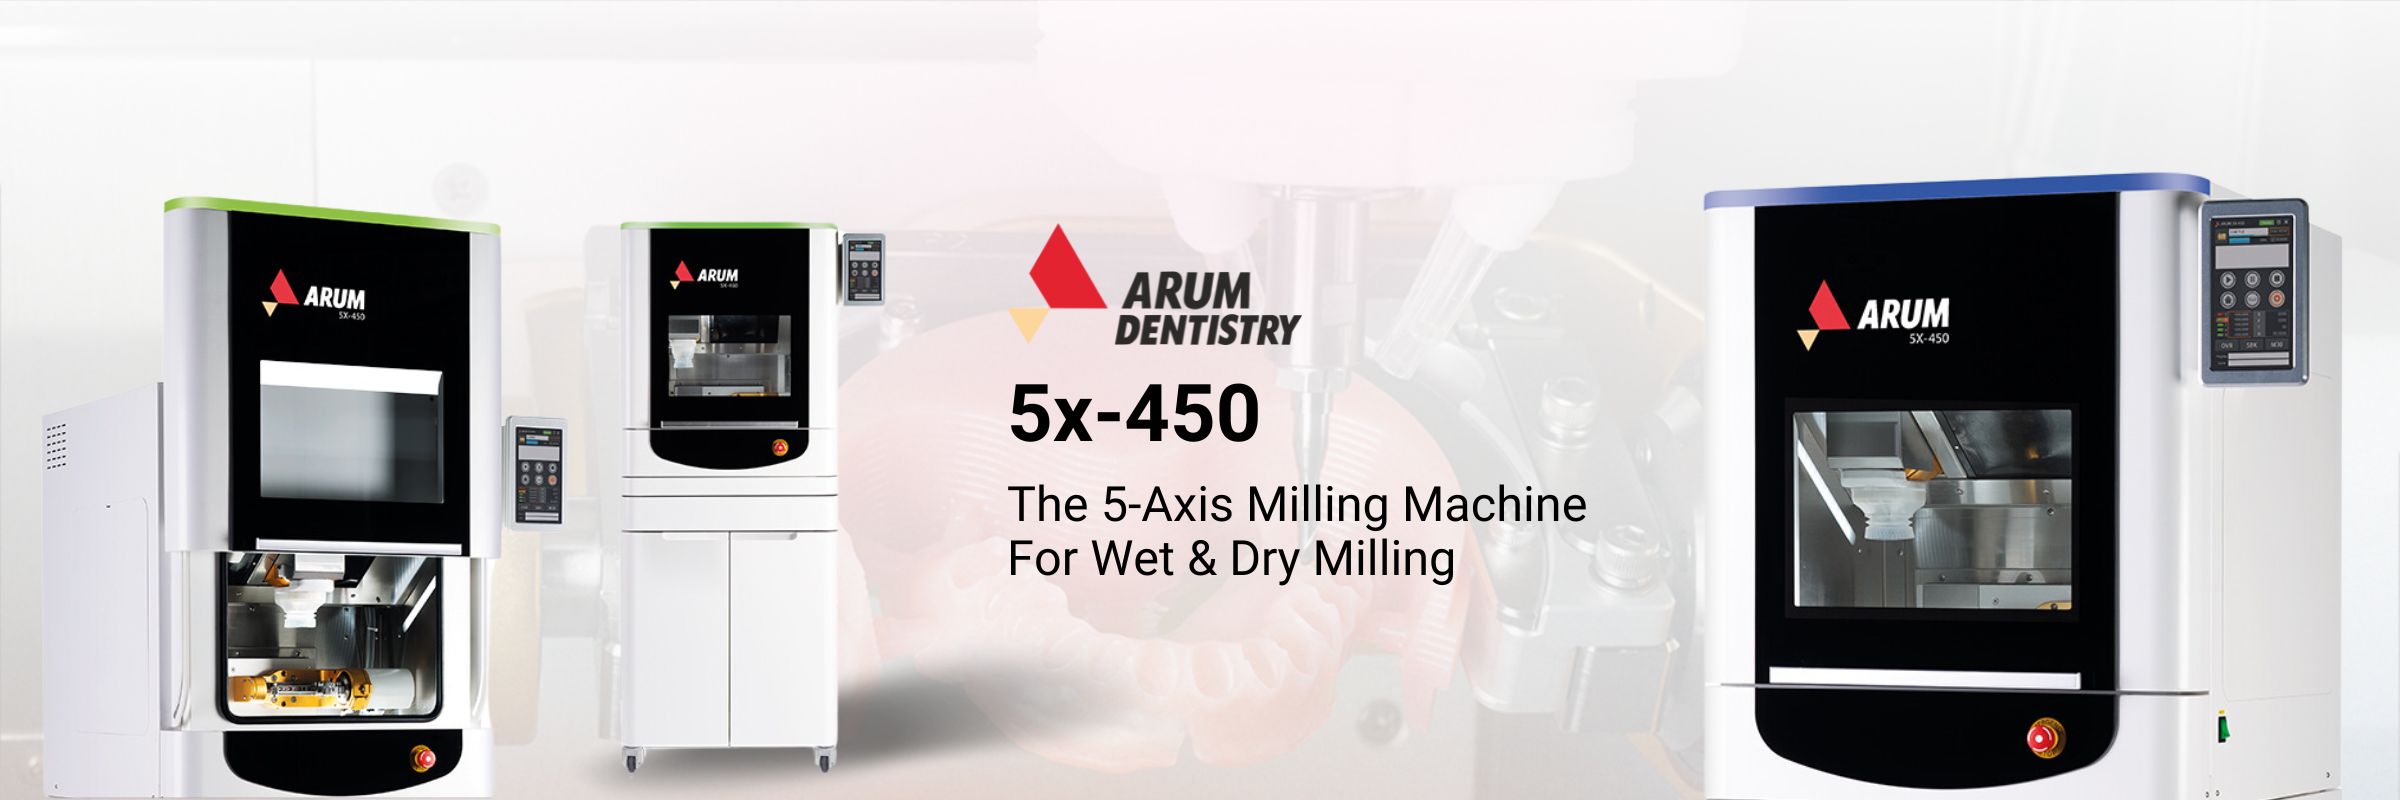 Arum 5x-450 Banner